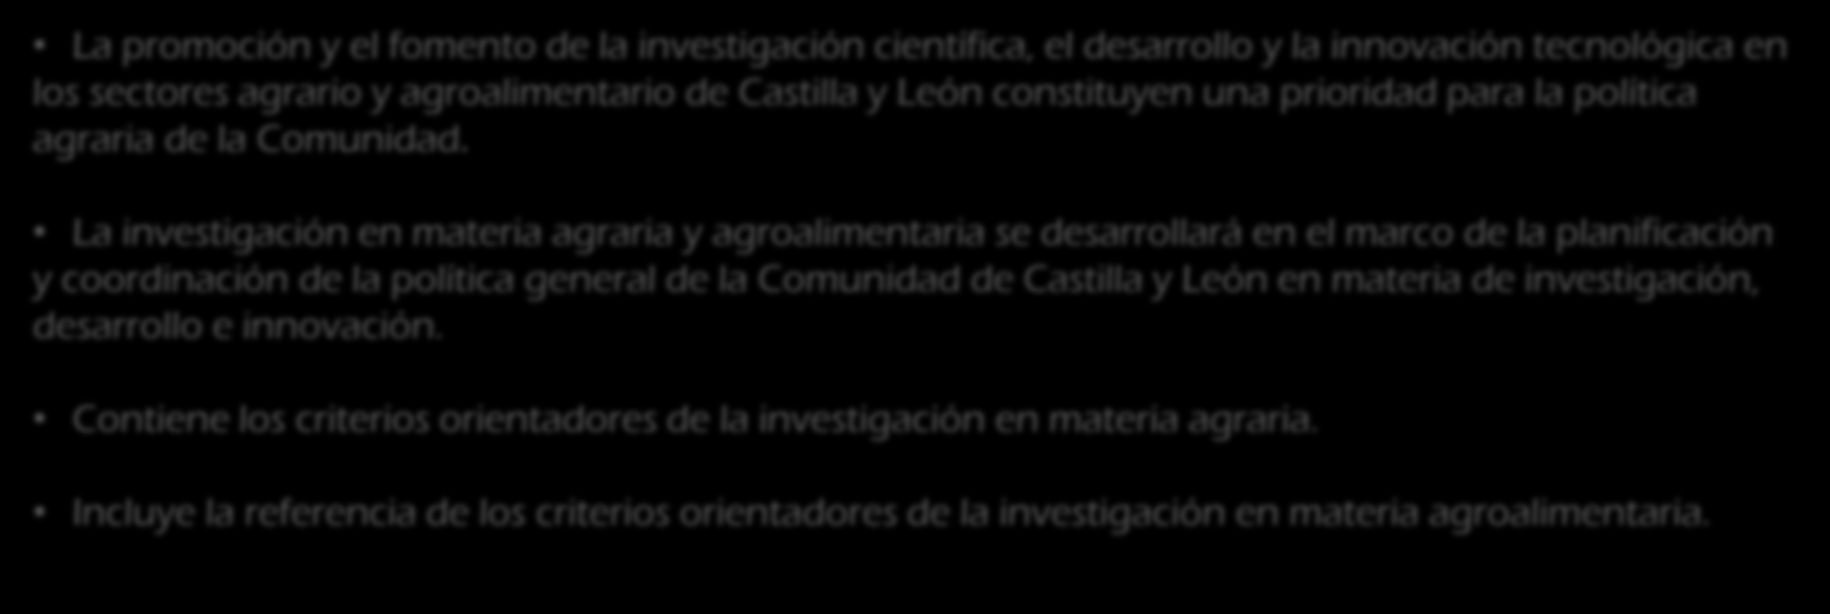 ESTRATEGIAS DE INVESTIGACIÓN E INNOVACIÓN EN CASTILLA Y LEÓN LEY 1/2014, DE 19 DE MARZO, AGRARIA DE CASTILLA Y LEÓN Libro I, Titulo II. Capítulo III.